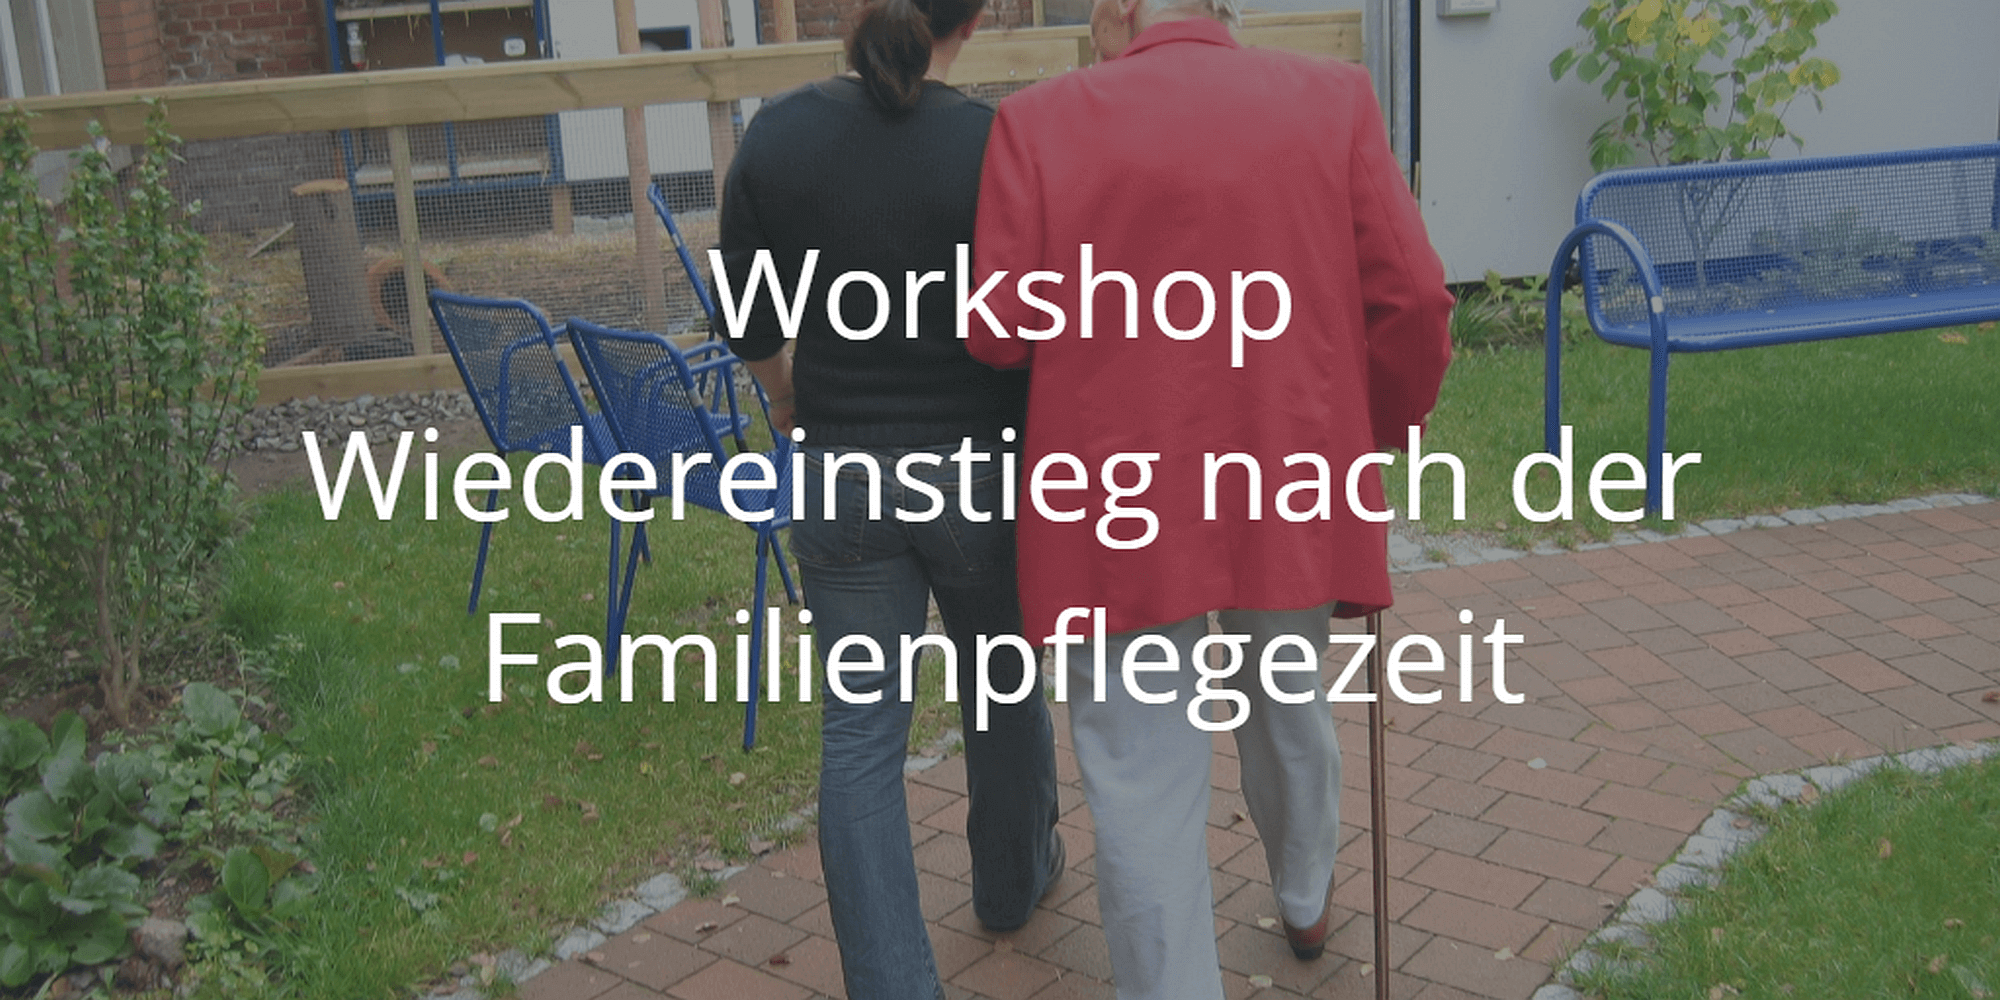 Workshop Wiedereinstieg nach der Familienpflegezeit